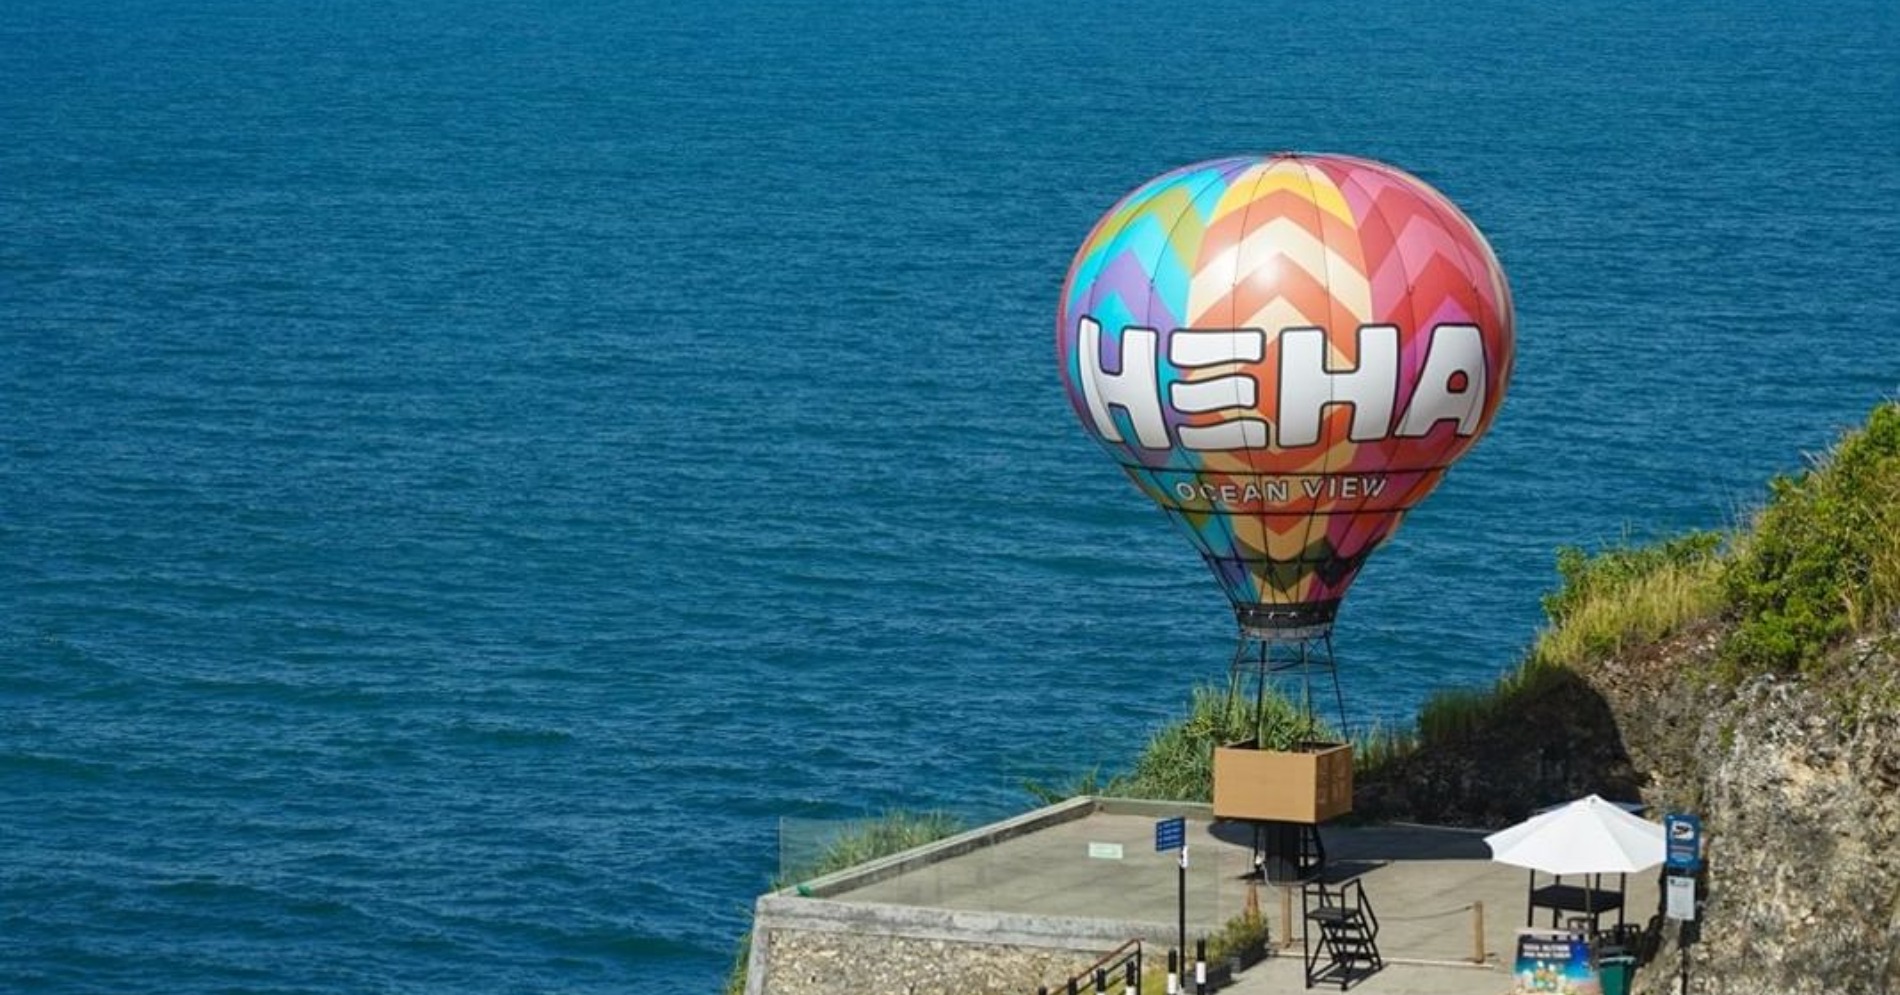 Spot foto di HeHa Ocean View (Sumber gambar: Instagram.com/hehaoceanview)